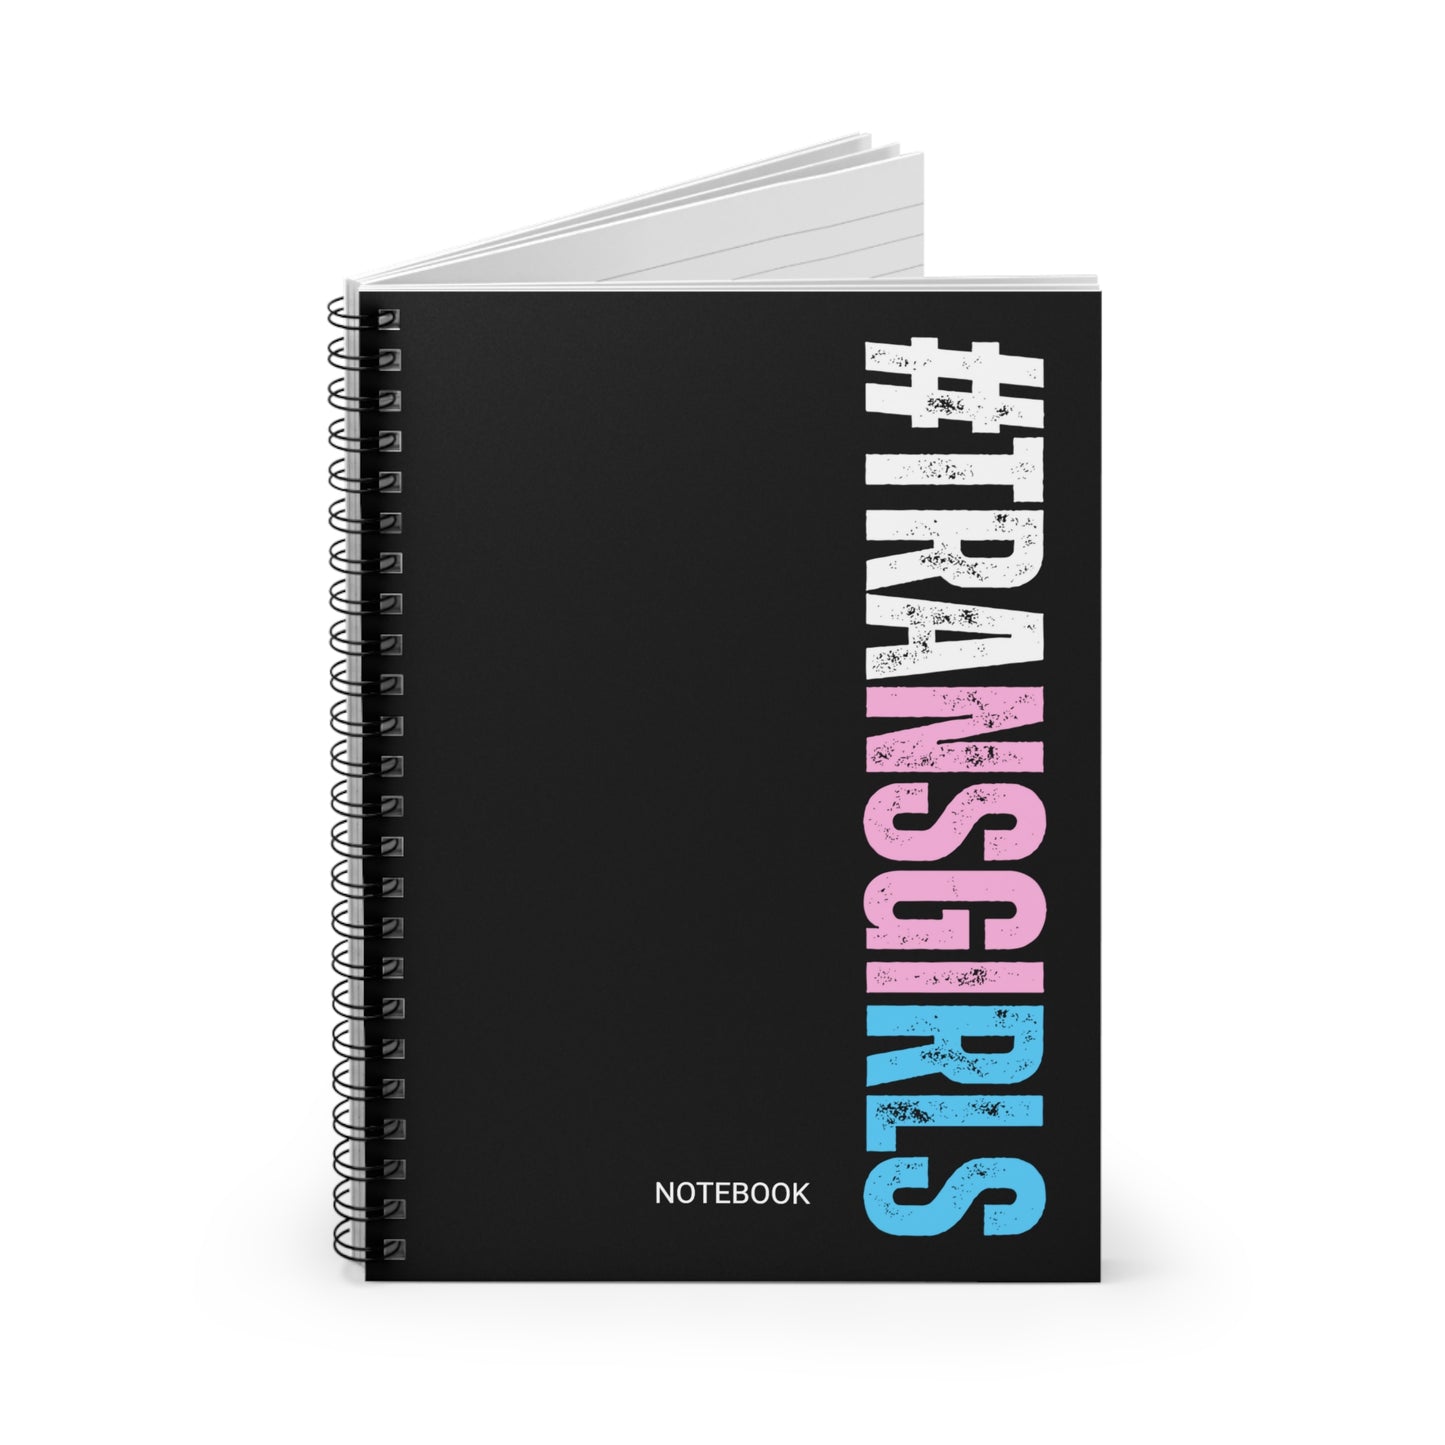 Blue Pink White #TRANSGIRLS Series Black Spiral Notebook